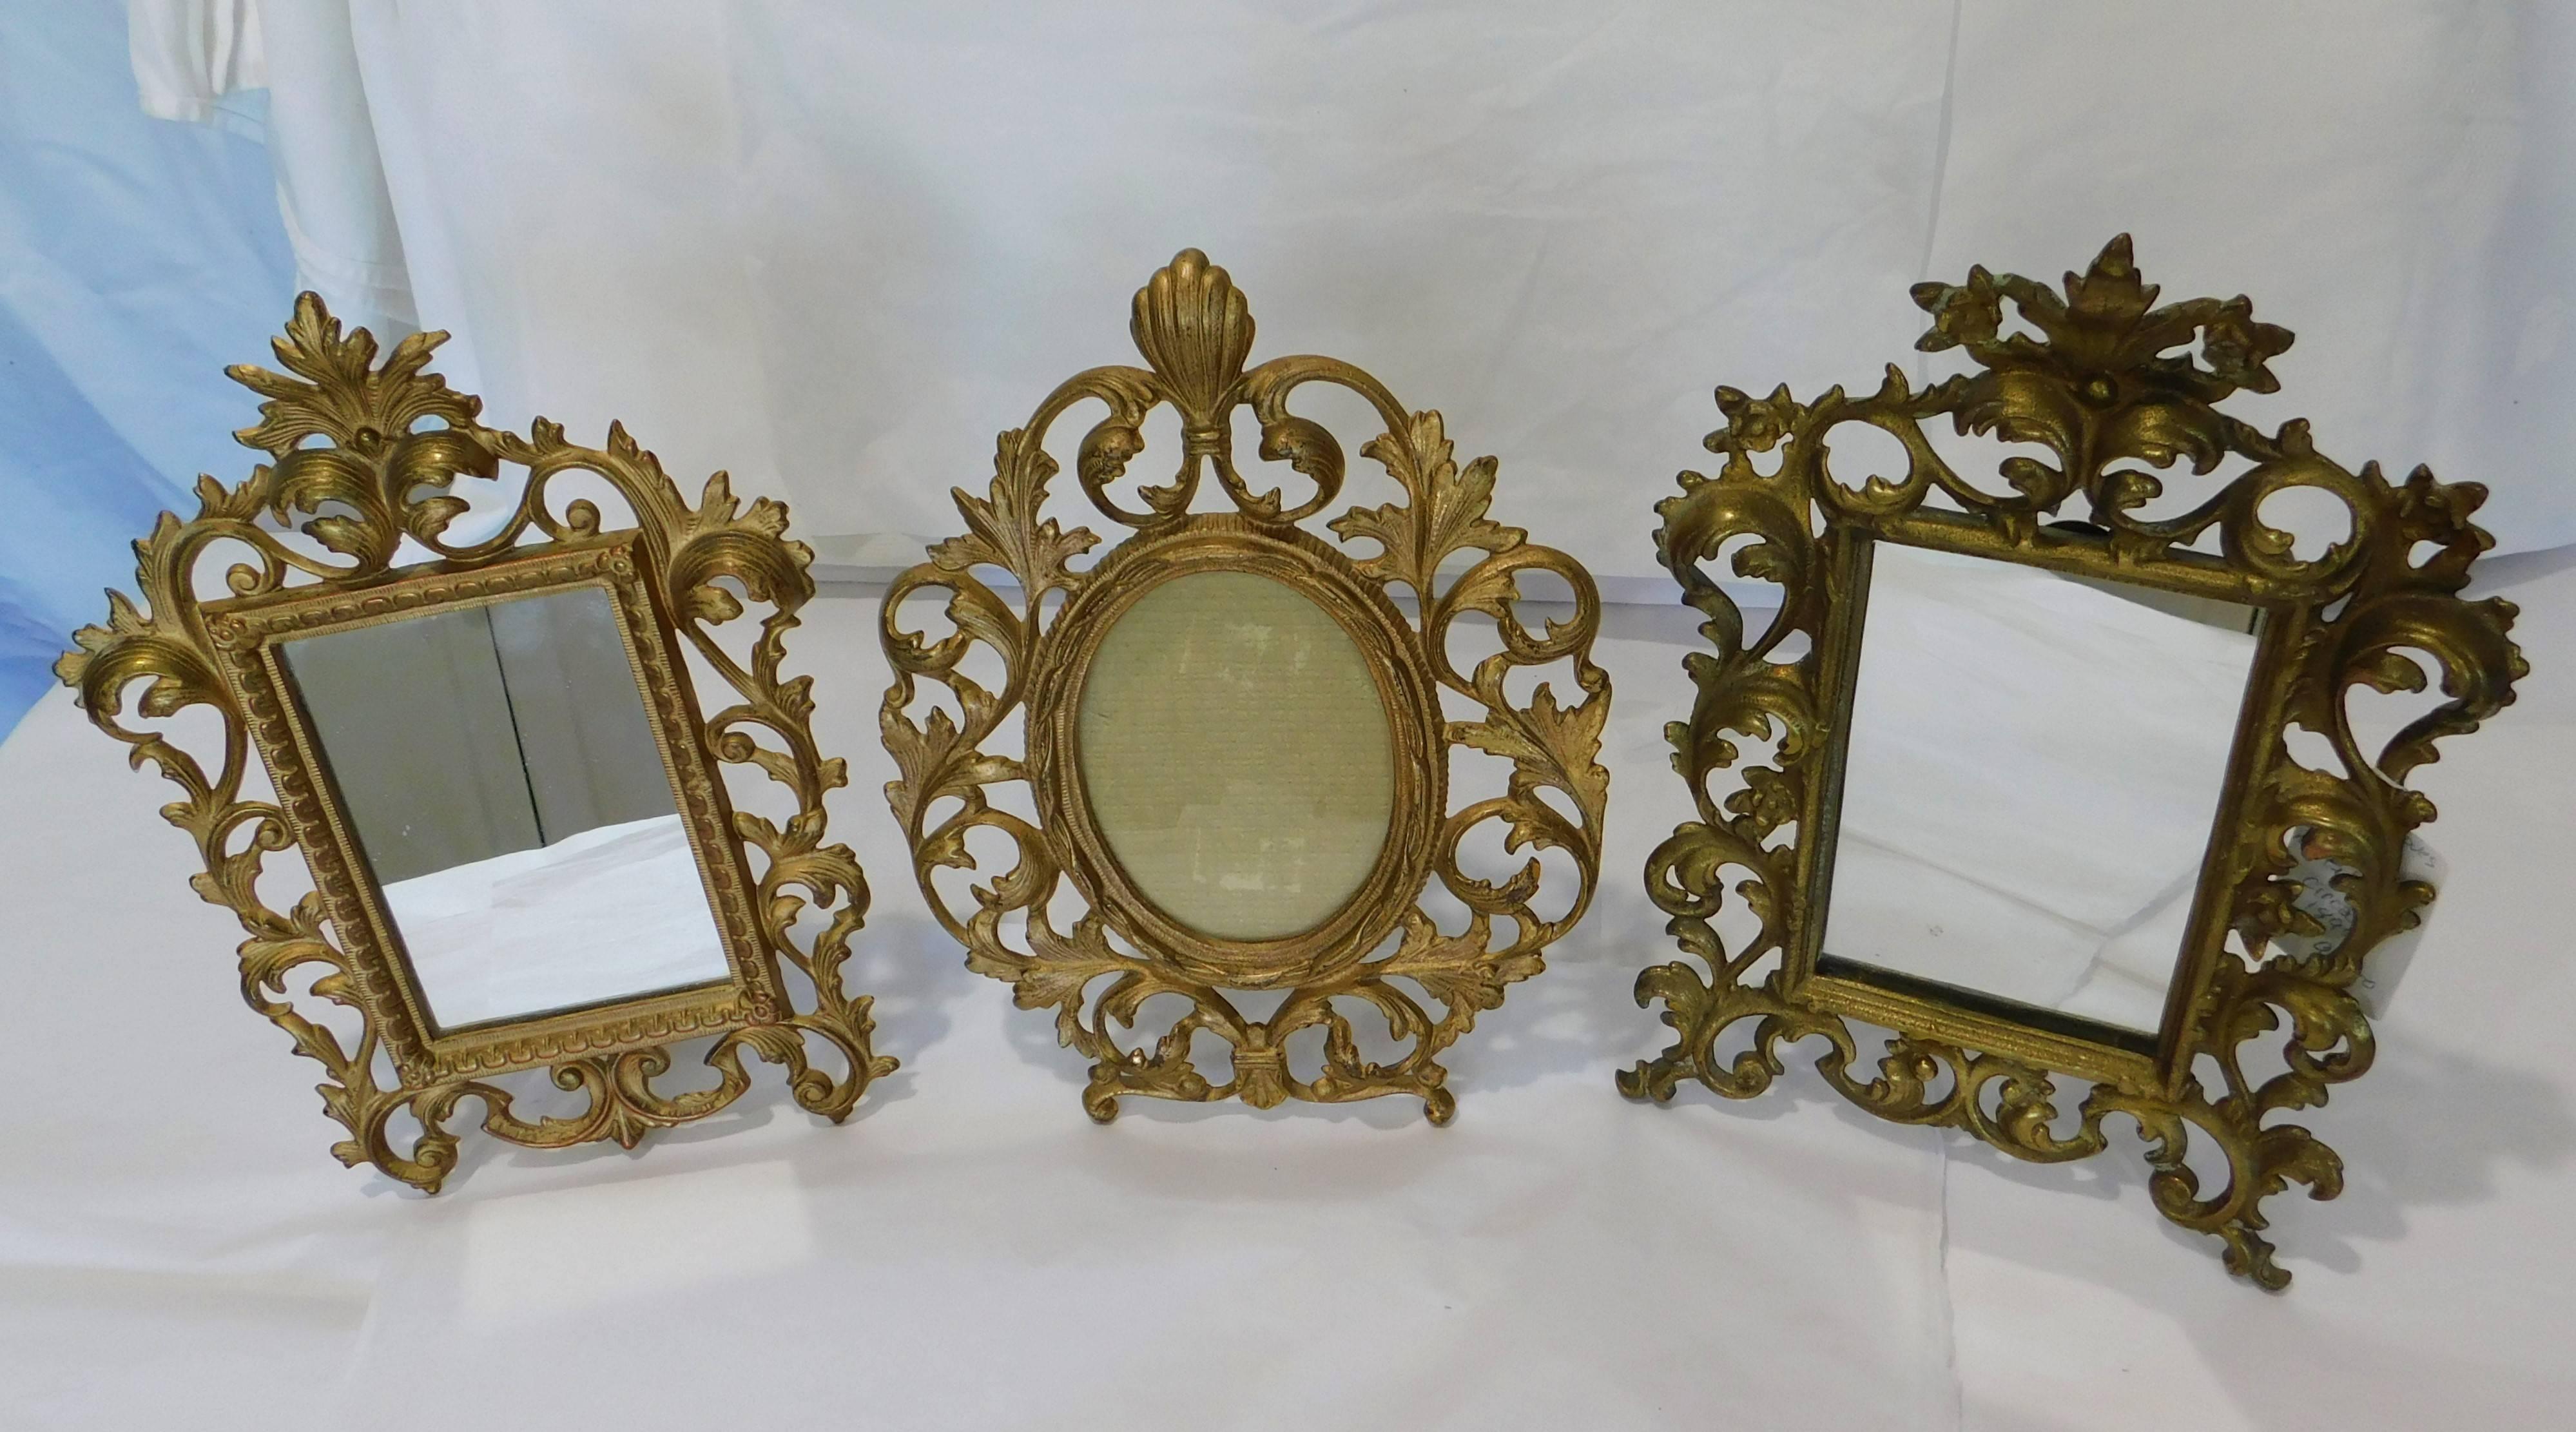 Ces deux miroirs de table anglais en bronze doré sont en très bon état et sont de style Rococo.
Mesures : Deux miroirs rectangulaires mesurent 8 x 11.25 x 1.25 pouces et 8 x 11.50 x 3.25 pouces. Le cadre ovale mesure 8,5 x 11 x 4 pouces et peut